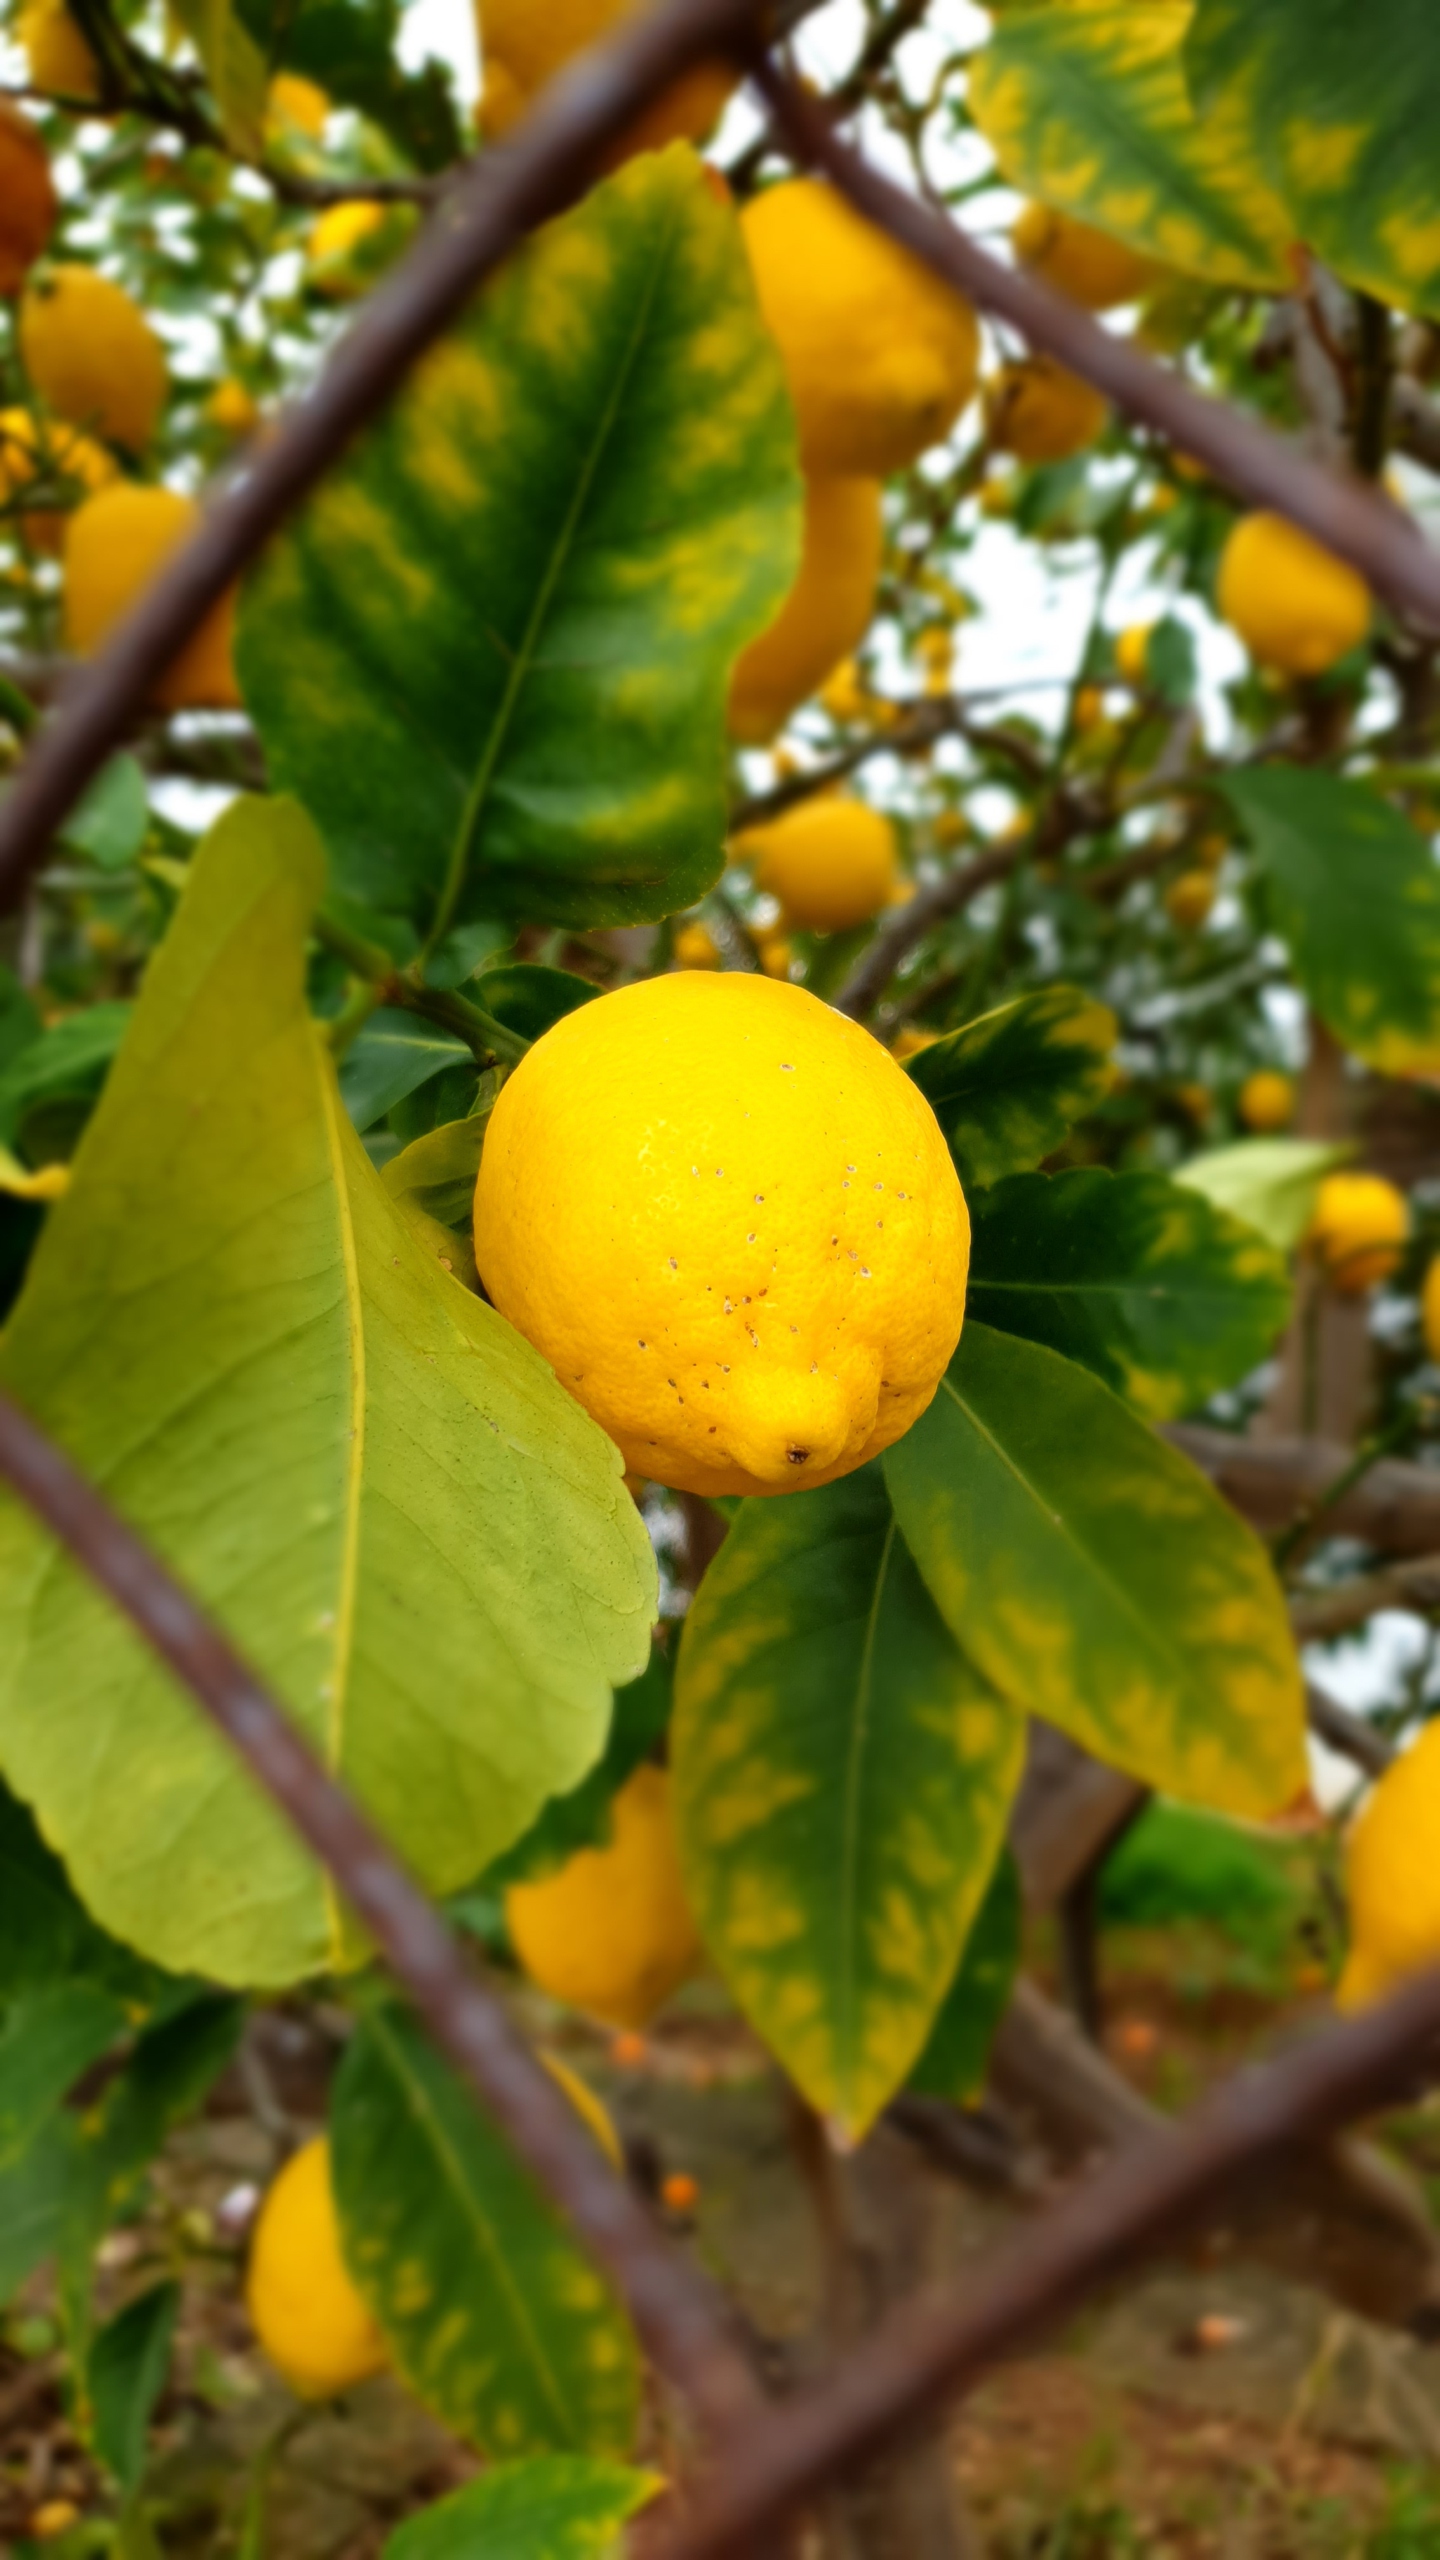 Bild zeigt eine gelbe Zitrone, die an einem Baum hängt, der hinter einem Zaun steht, in Großaufnahme.